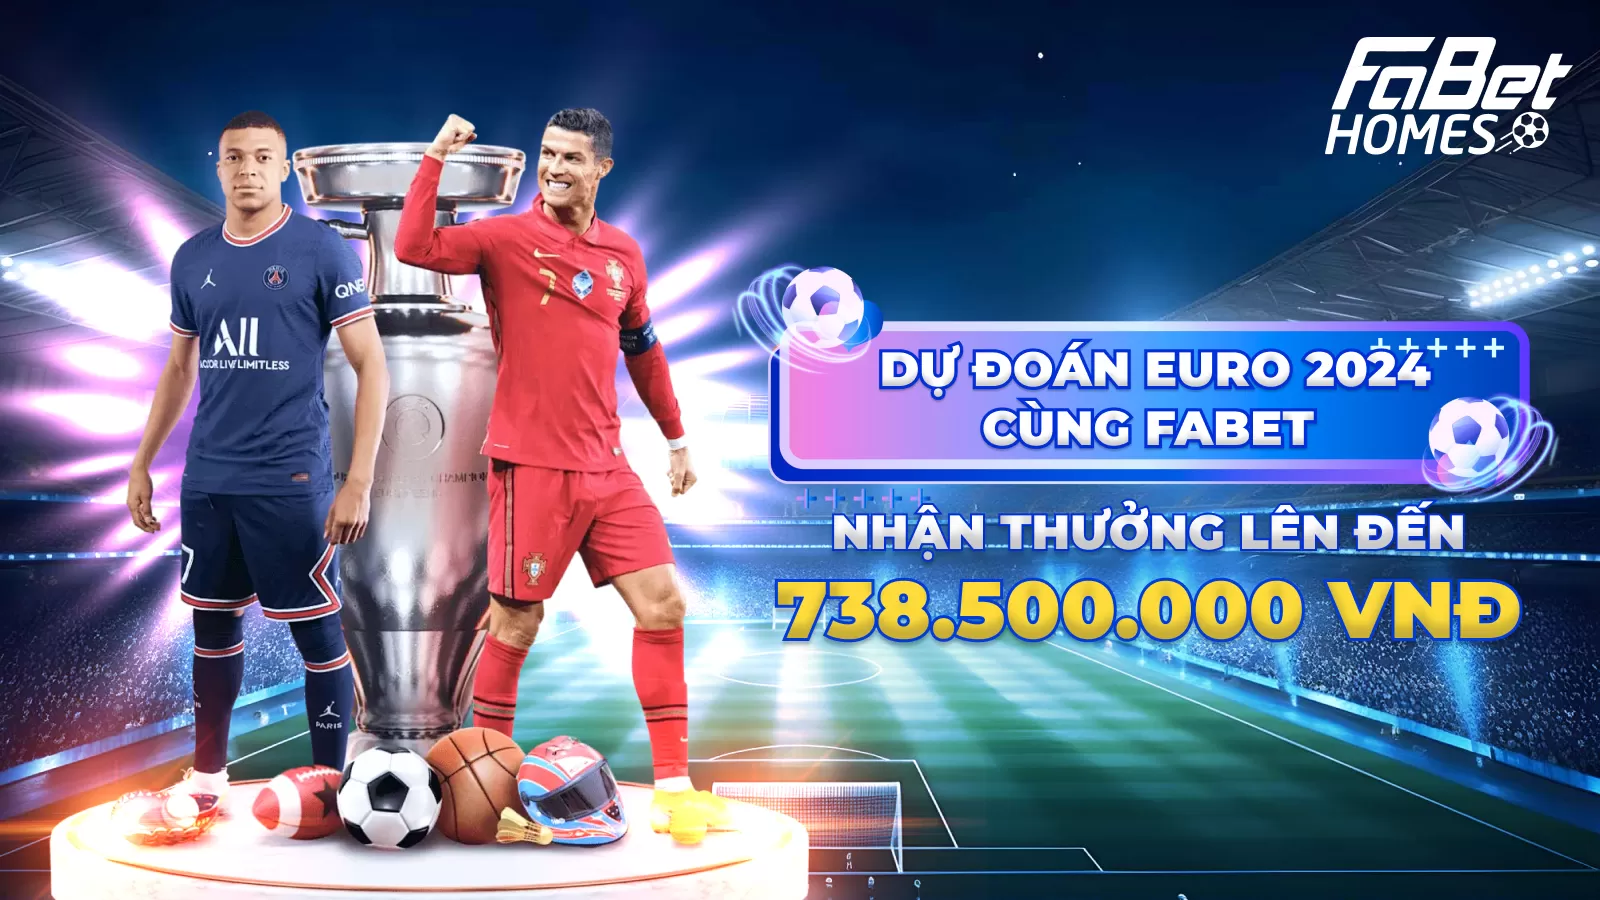 Dự đoán Euro 2024 cùng Fabet, giải thưởng cao nhất lên tới 738 triệu đồng